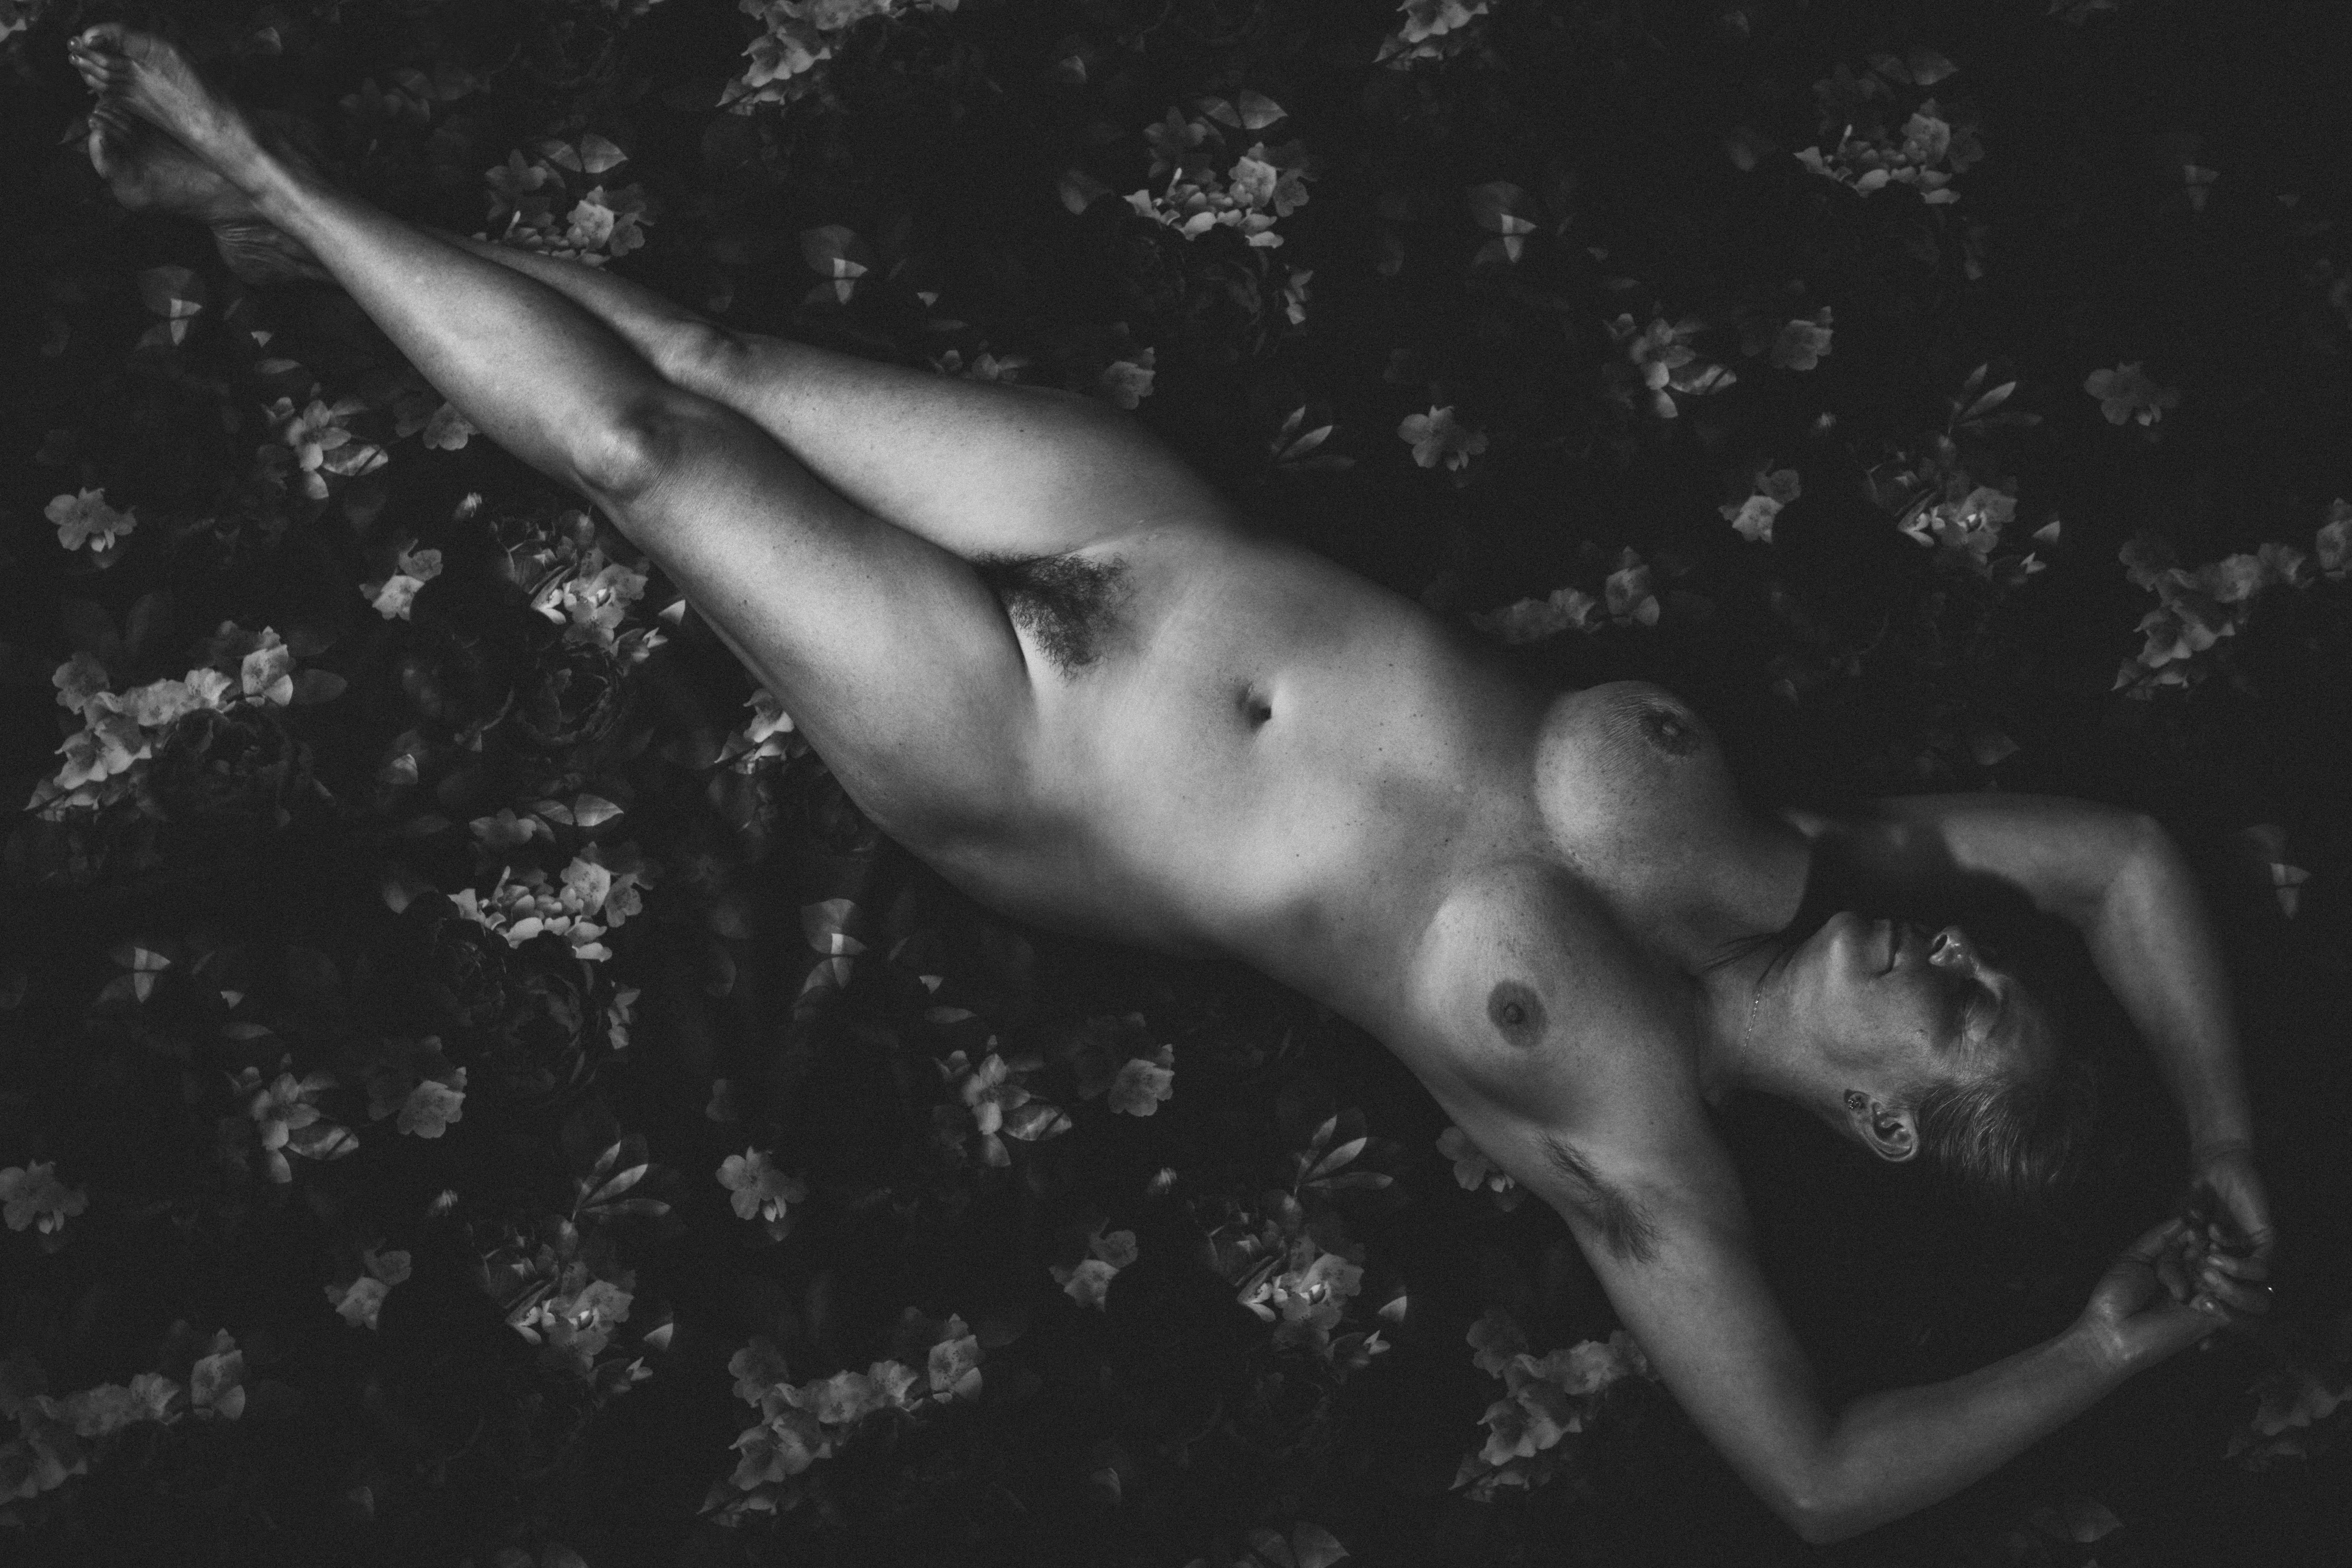 Laurentina Miksys Black and White Photograph – Porträt einer nackten Frau, bildende Kunst, Aktfotografie, limitierte Auflage 2/3